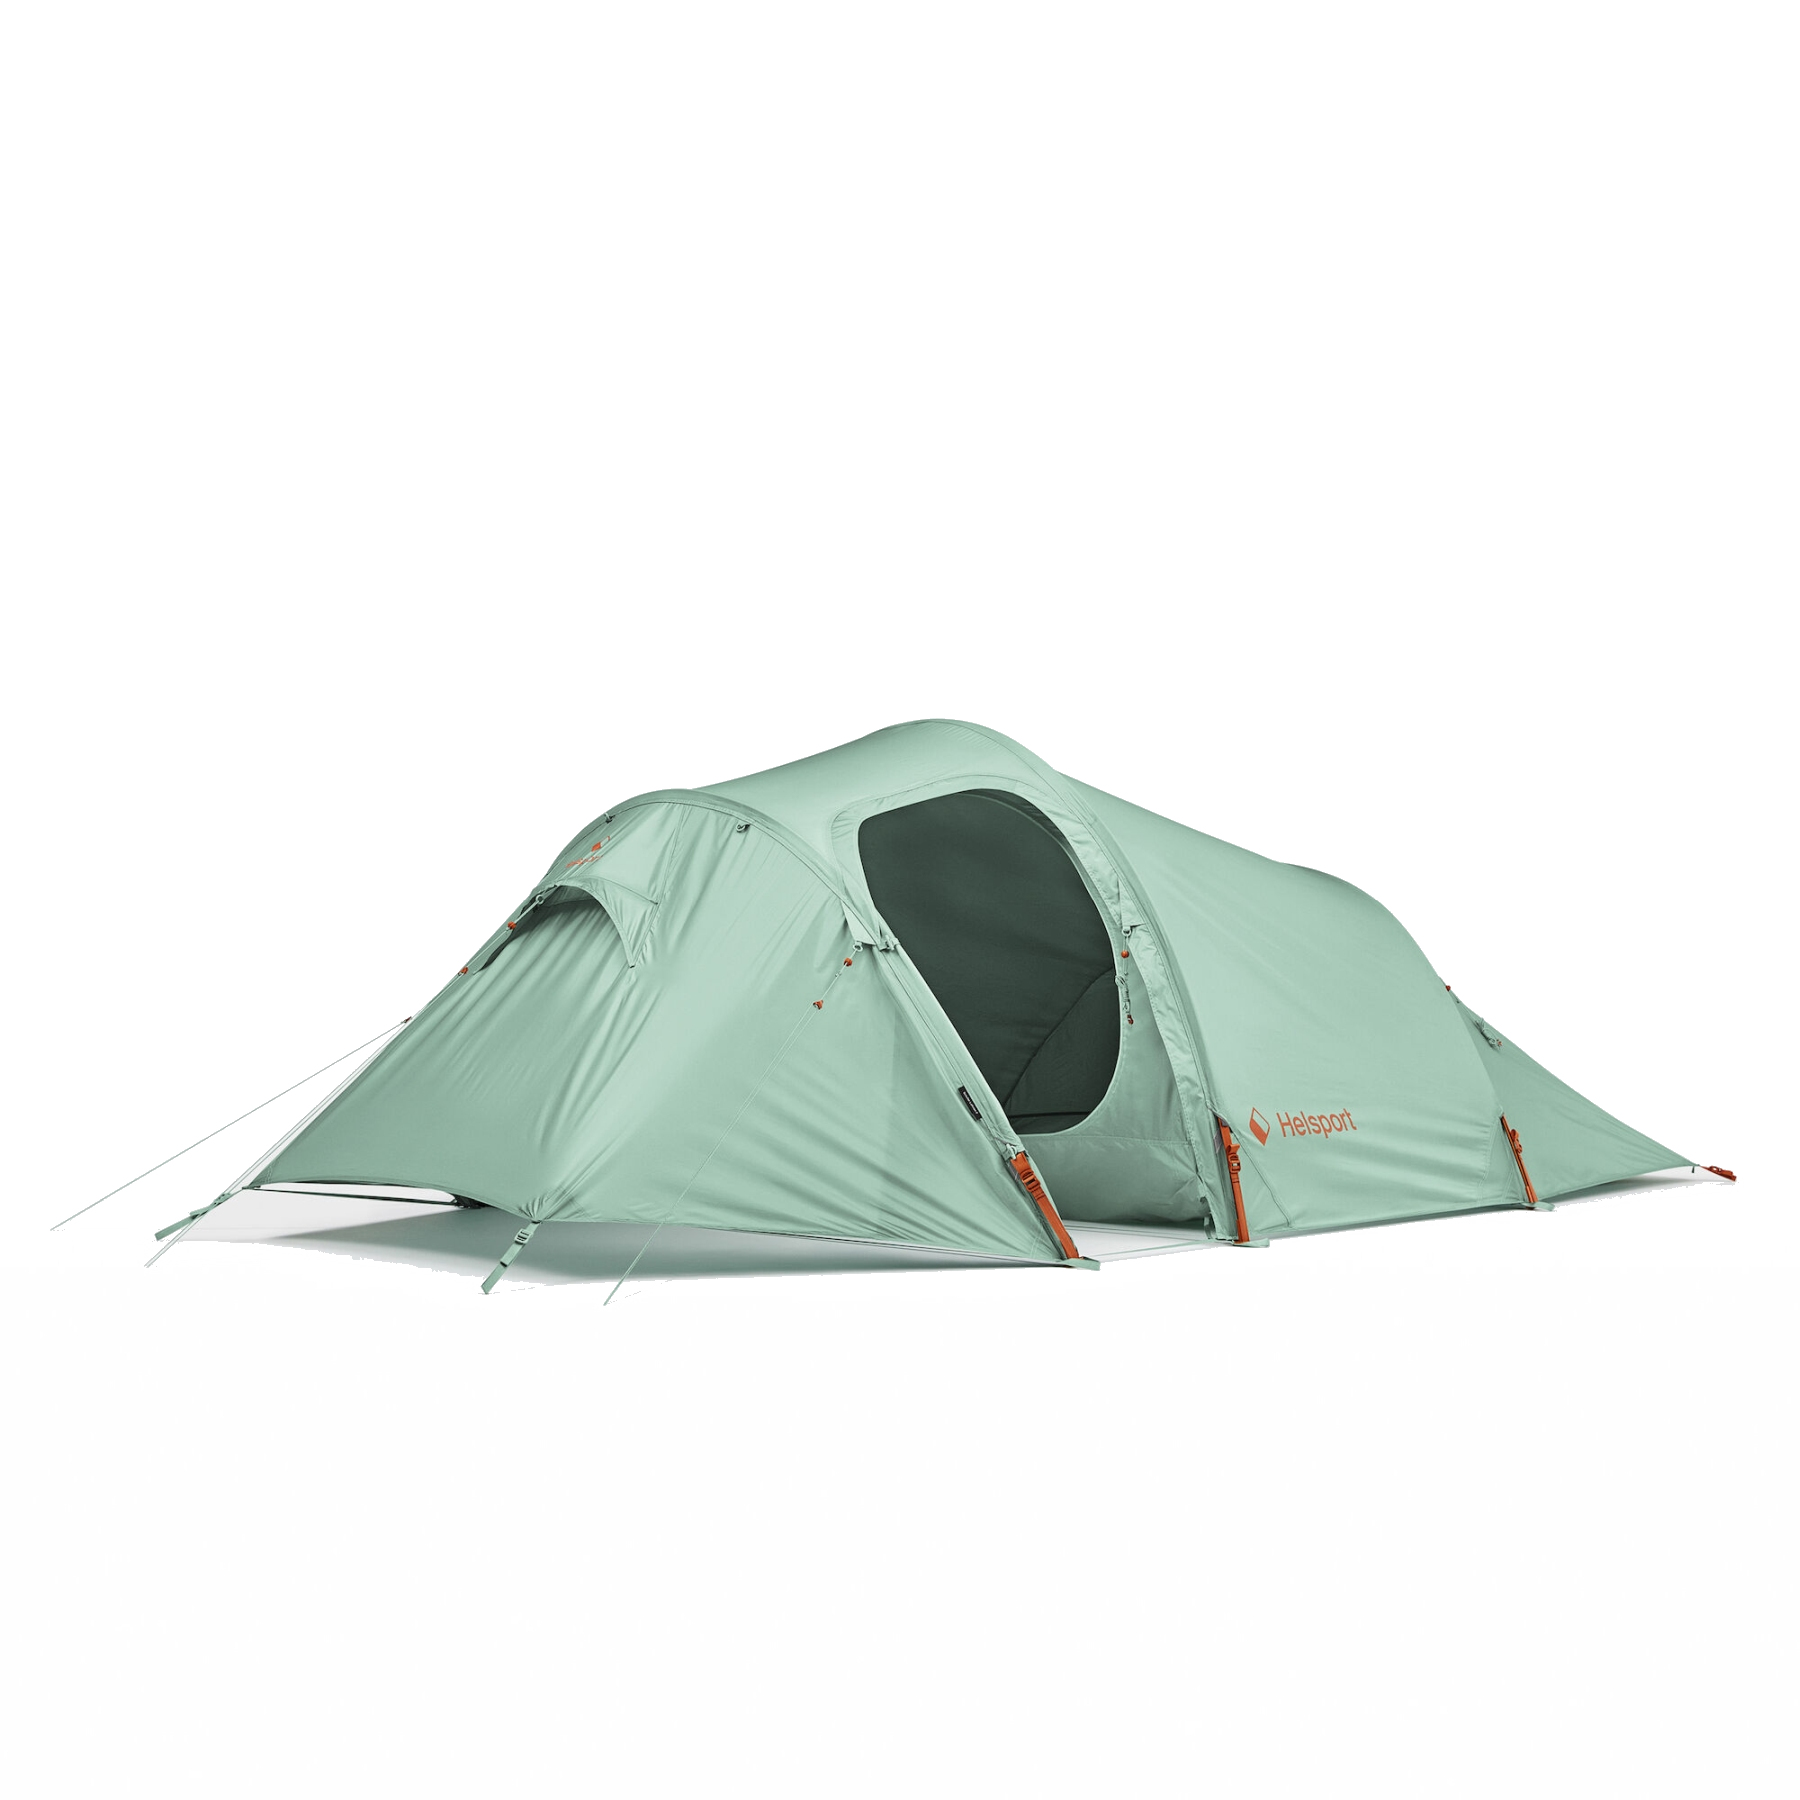 Productfoto van Helsport Scouter Lofoten 3 Tent - granite green/cloudberry